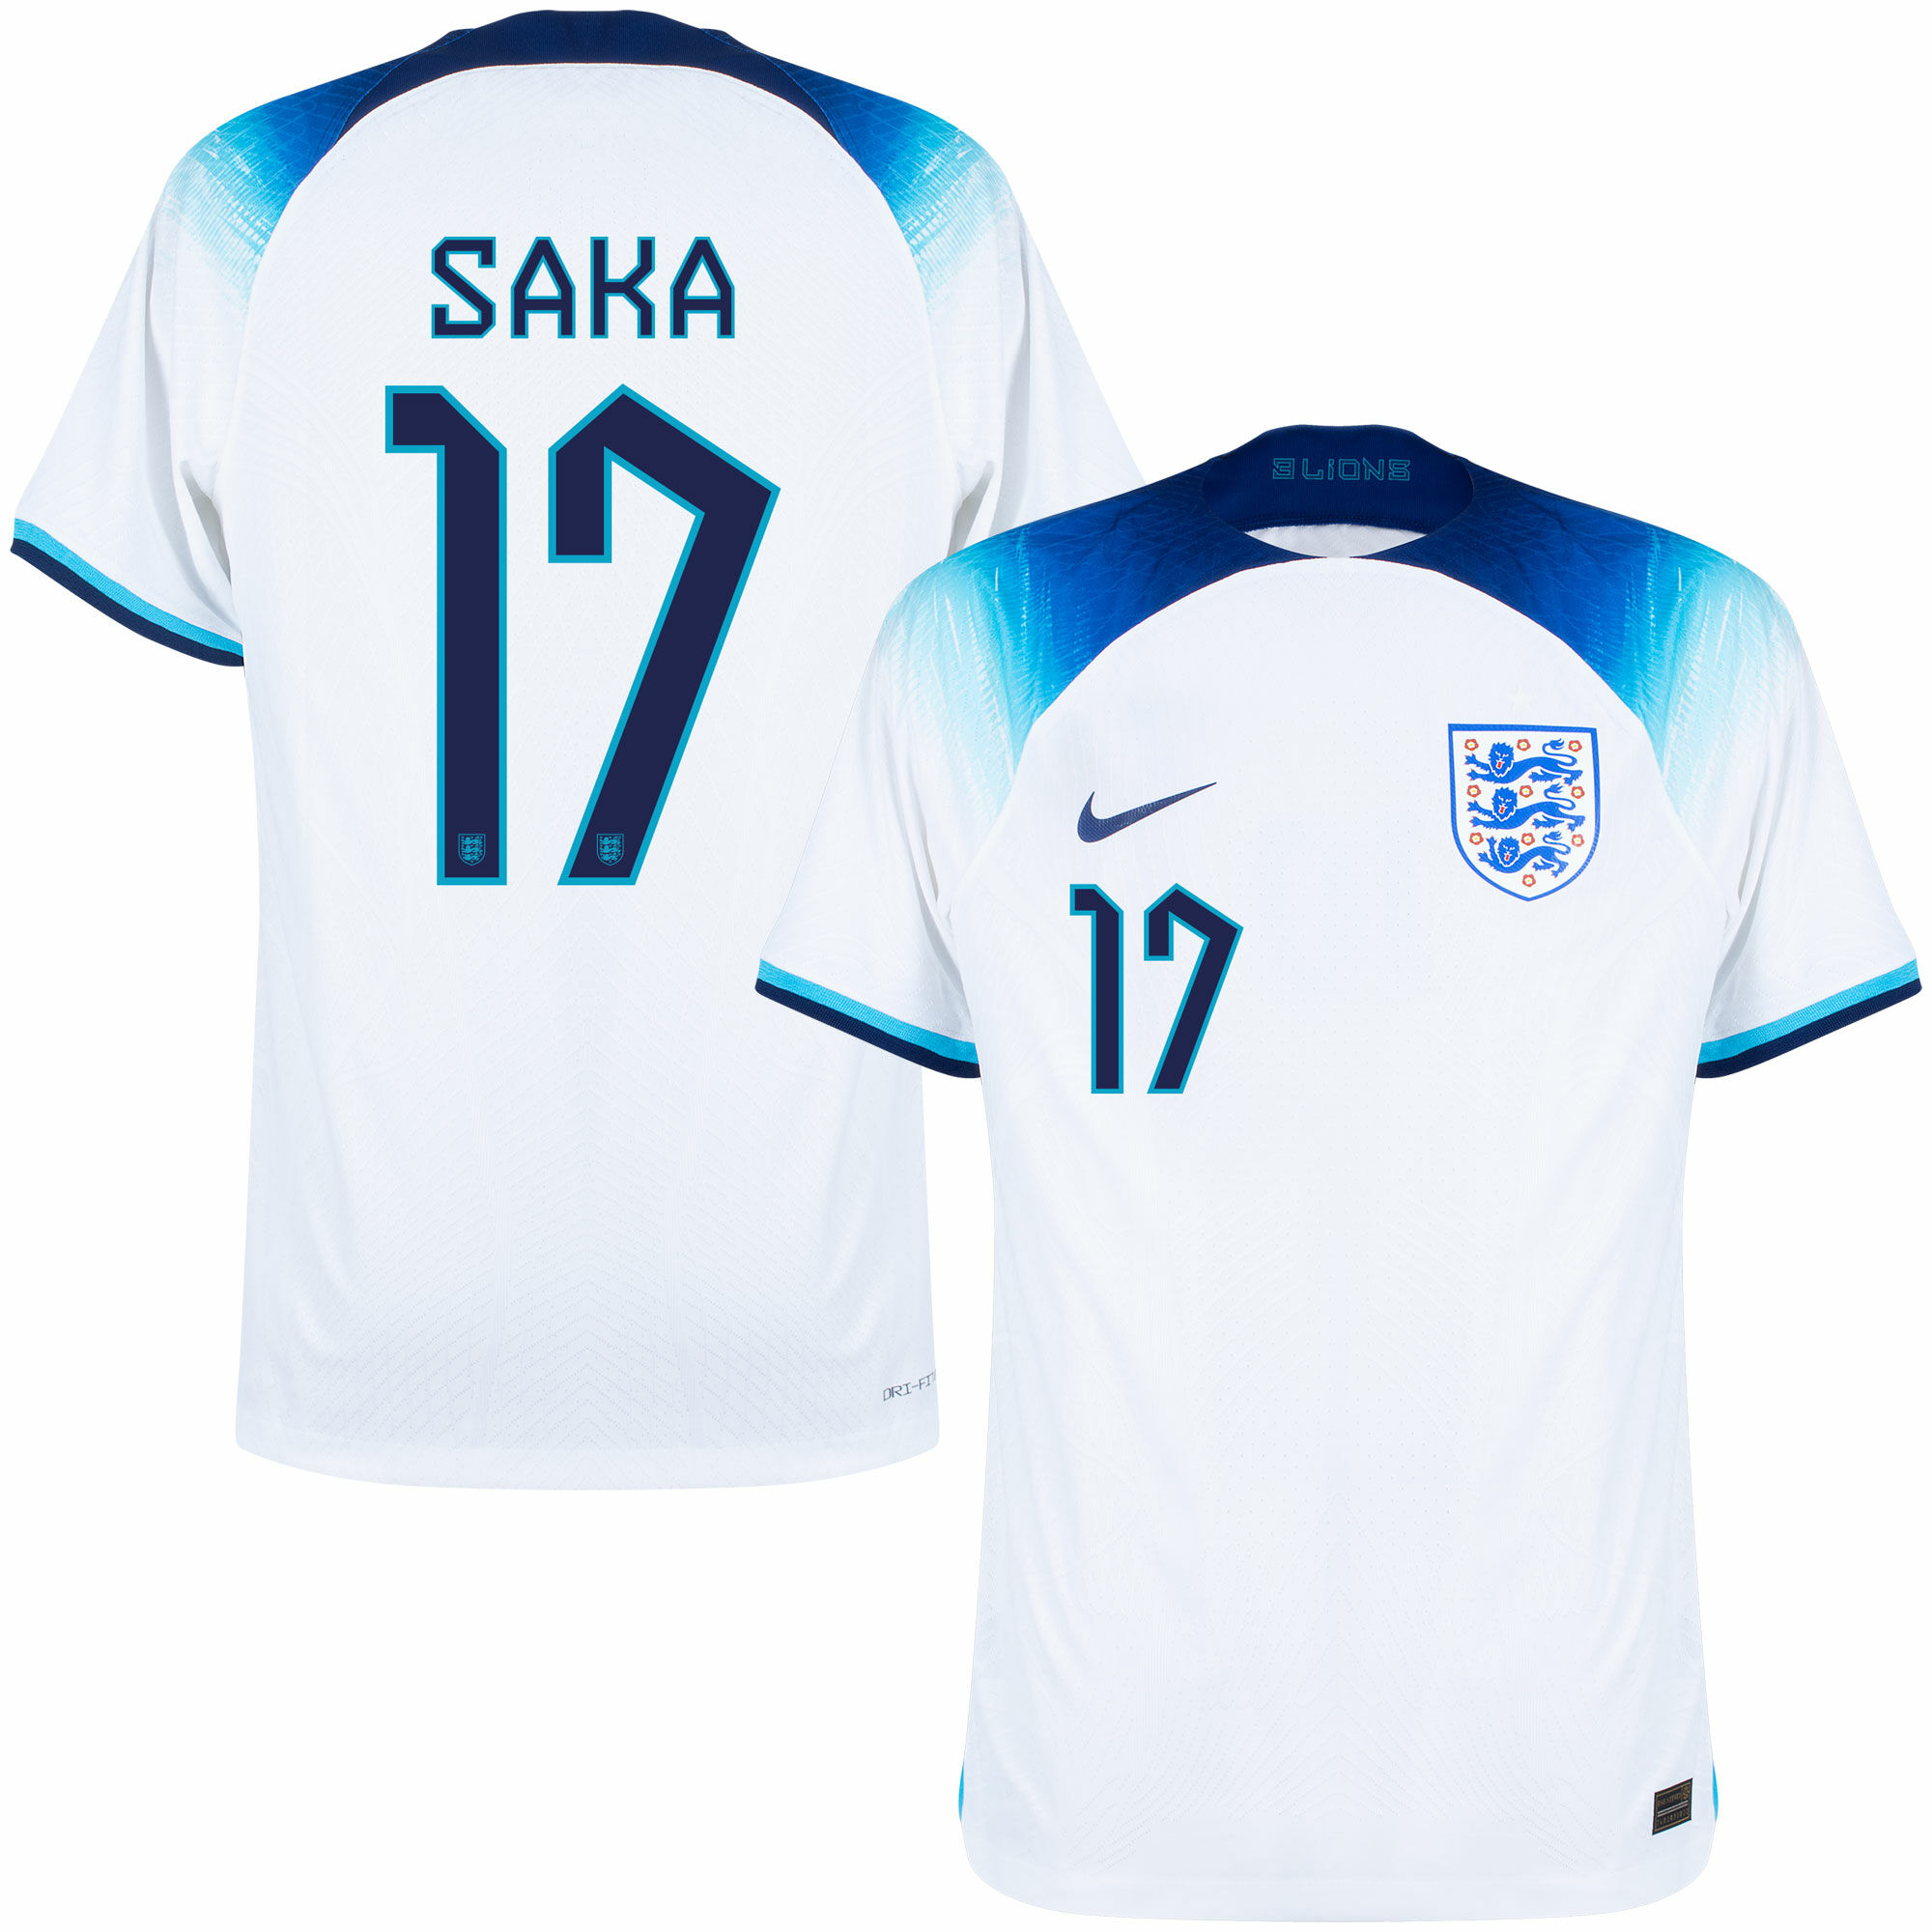 Anglie - Dres fotbalový "Match" - číslo 17, oficiální potisk, Bukayo Saka, domácí, bílý, sezóna 2022/23, Dri-FIT ADV